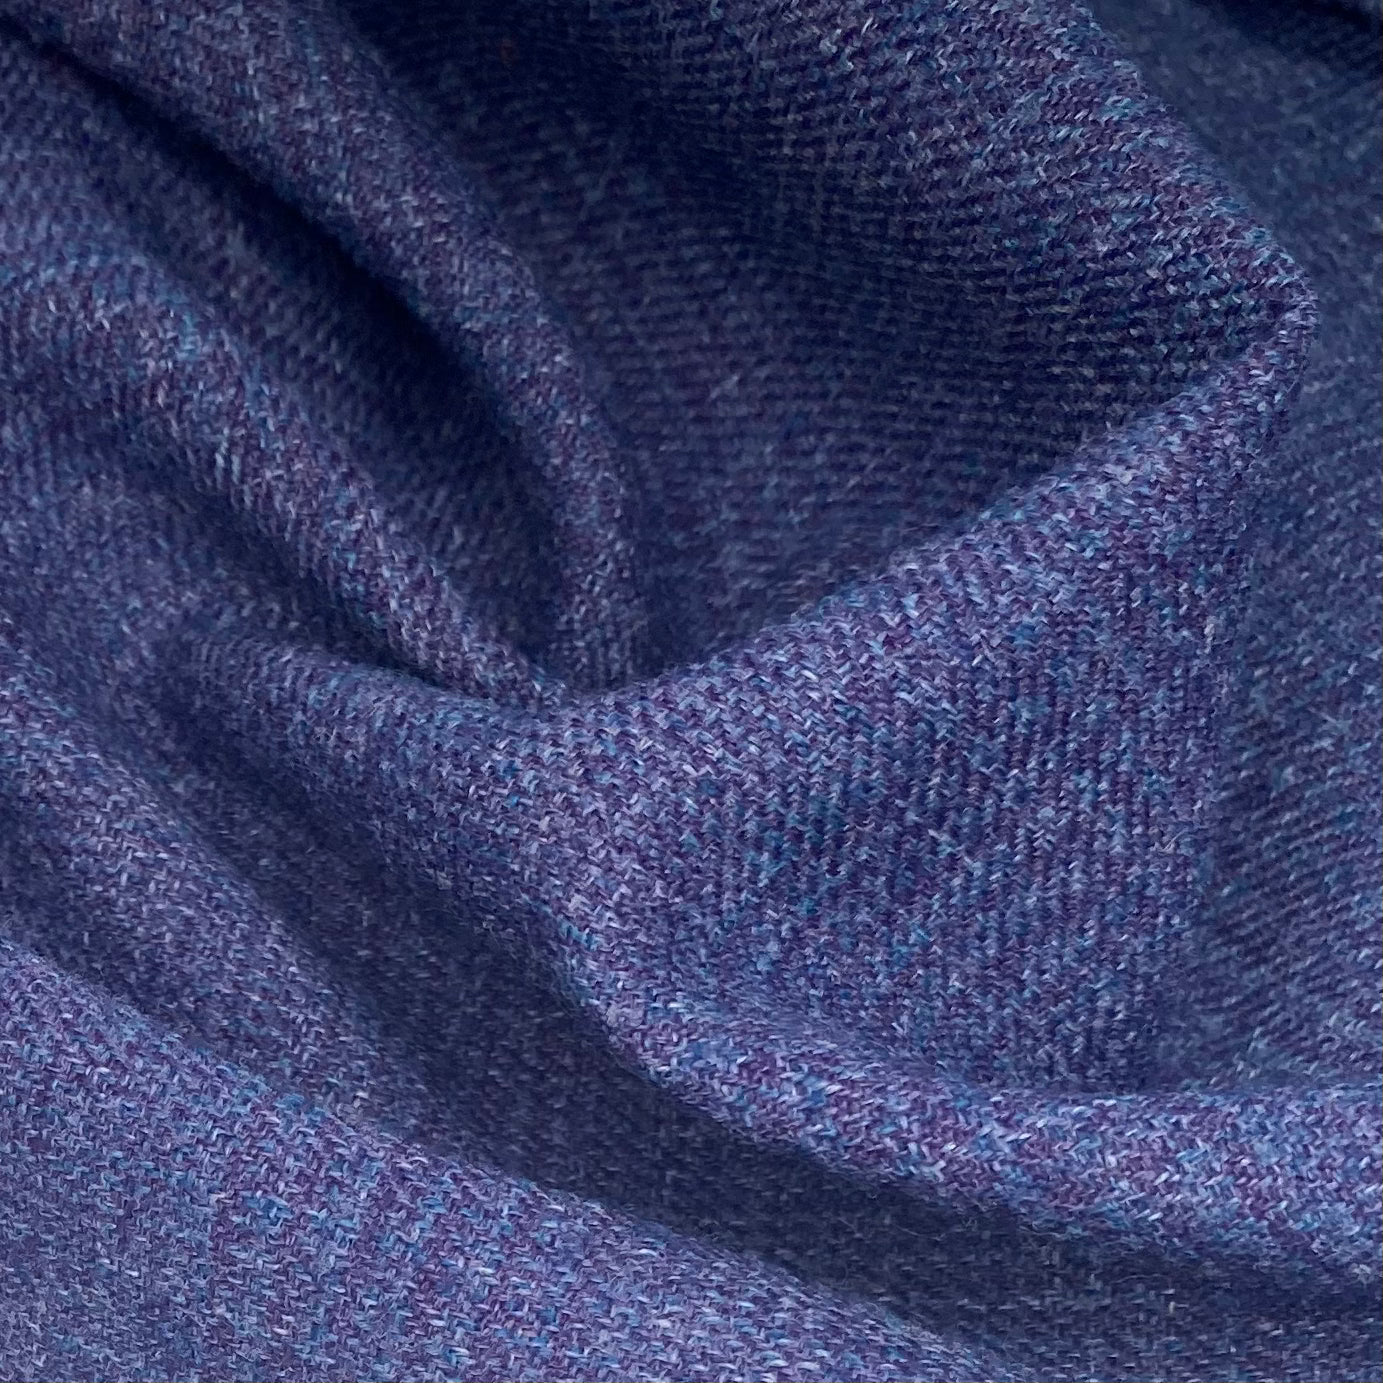 Wool Plaid - Purple/Blue